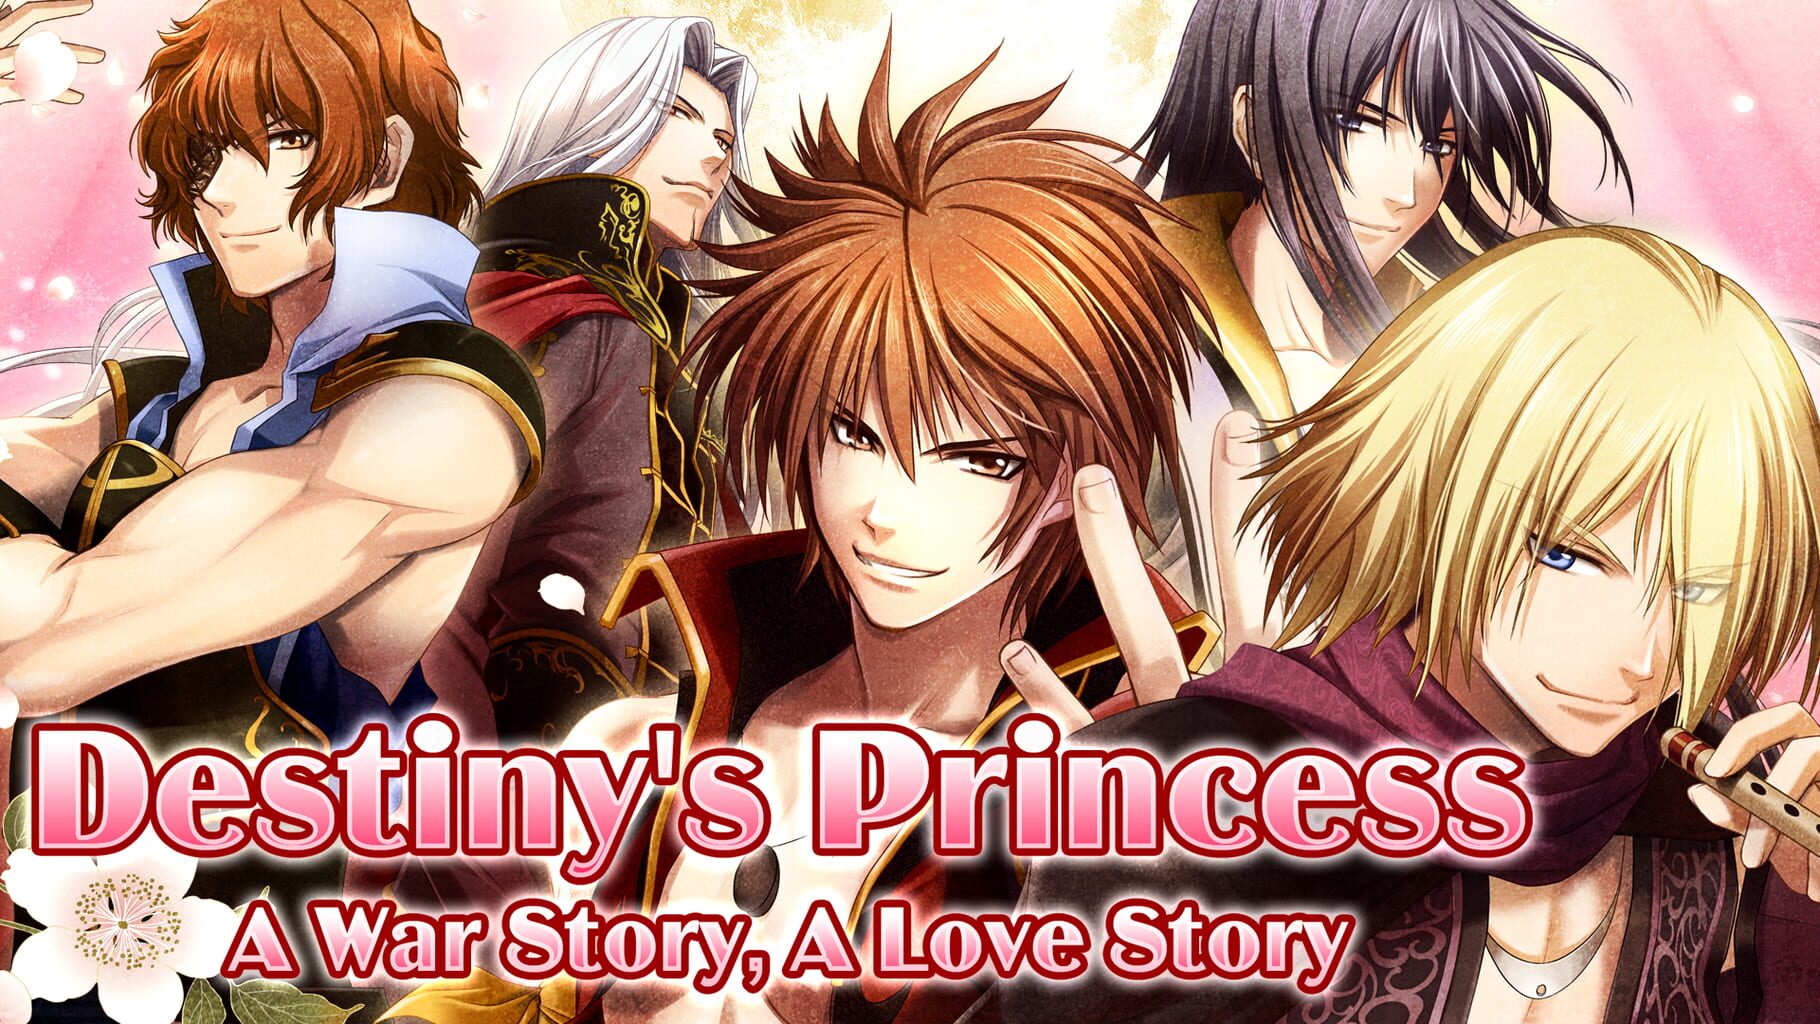 Destiny's Princess: A War Story, A Love Story artwork